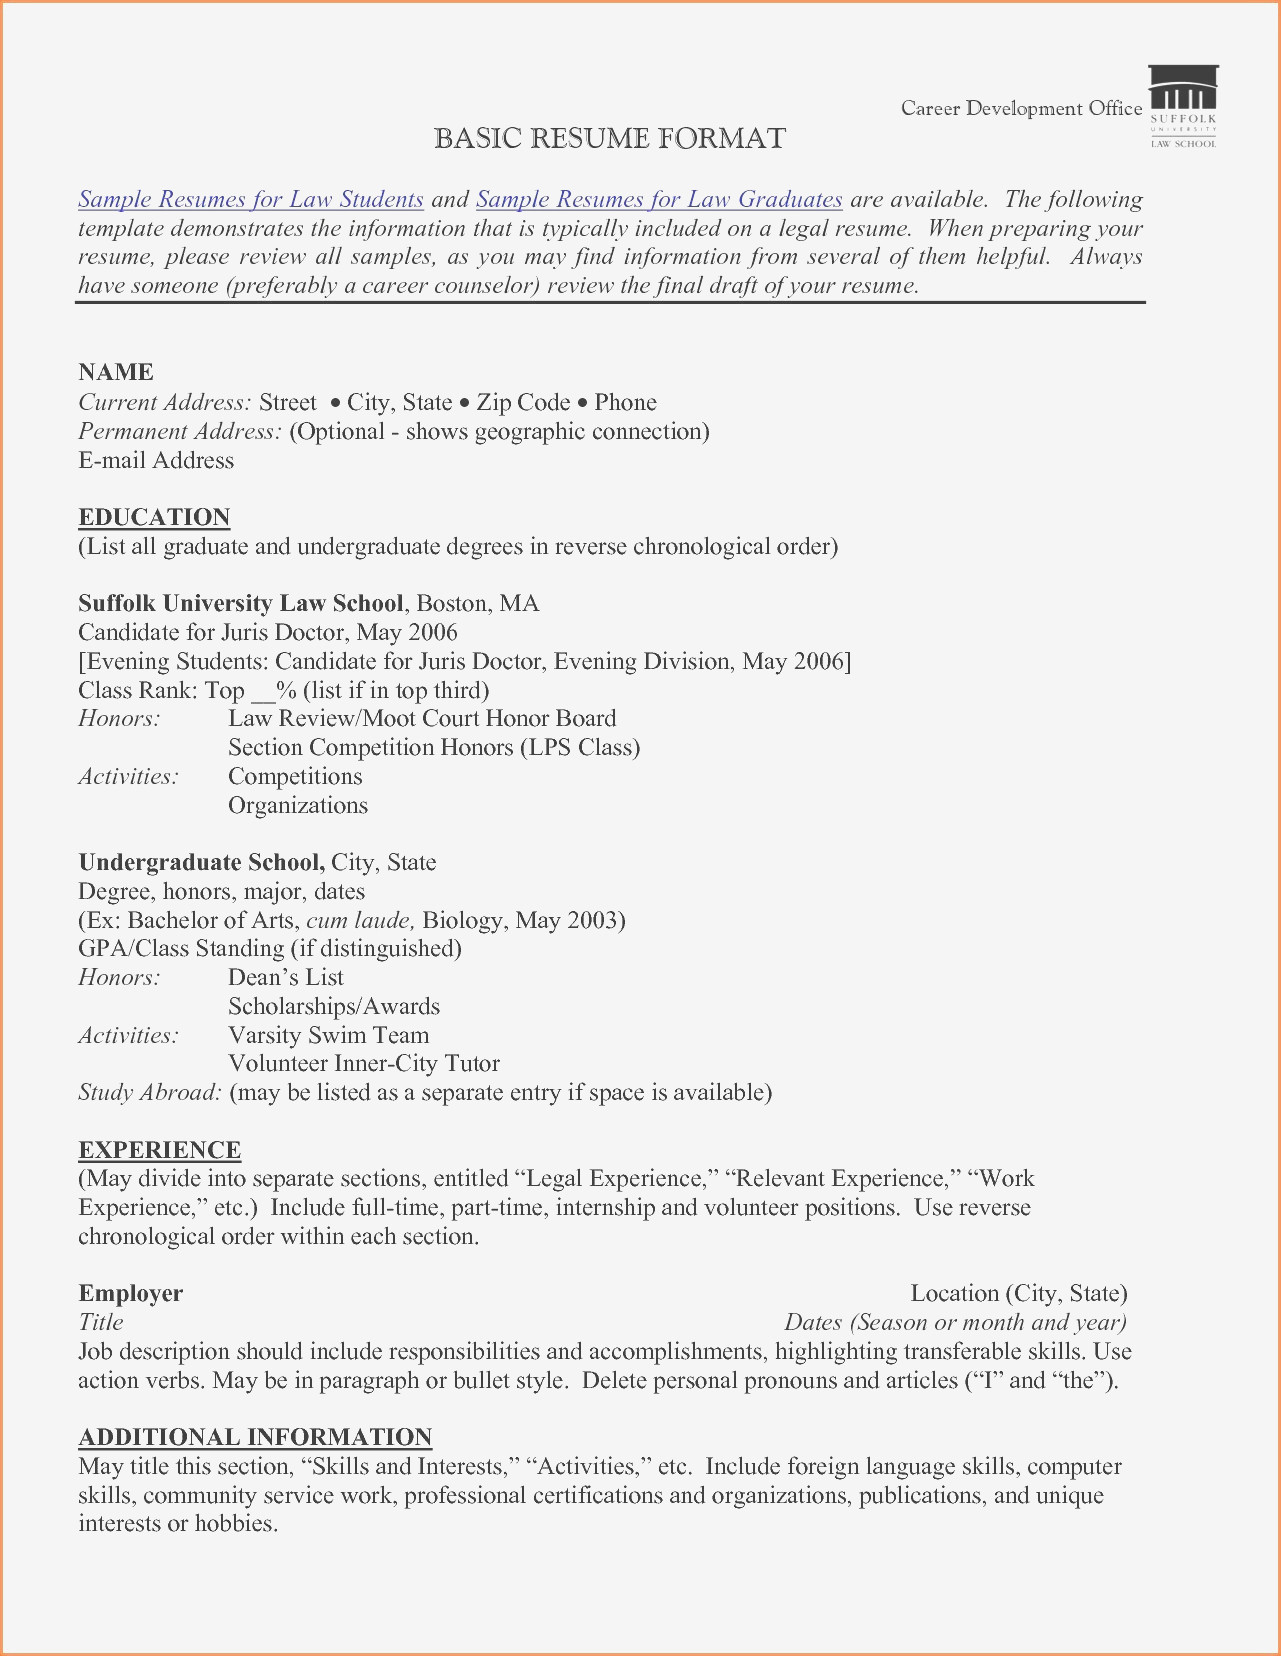 School Counselor Resume School Counselor Resume Examples Examples Sample Guidance Counselor Resume Of School Counselor Resume Examples school counselor resume|wikiresume.com